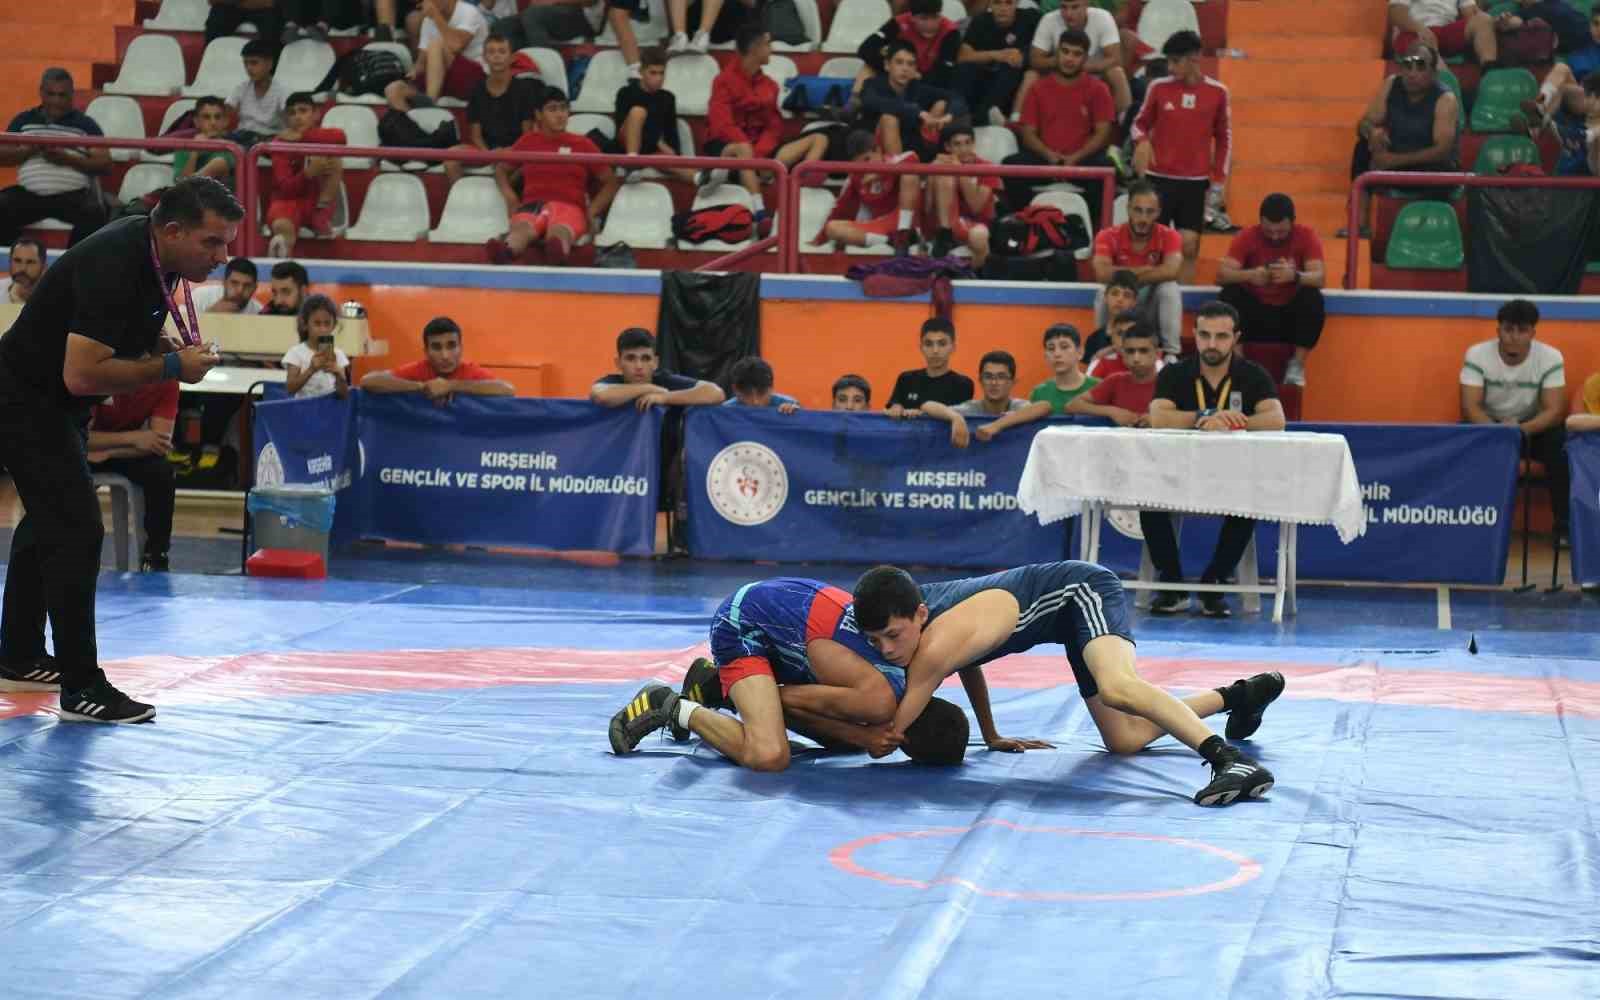 Kırşehir, 11-14 yaş güreş müsabakalarına ev sahipliği yapılıyor